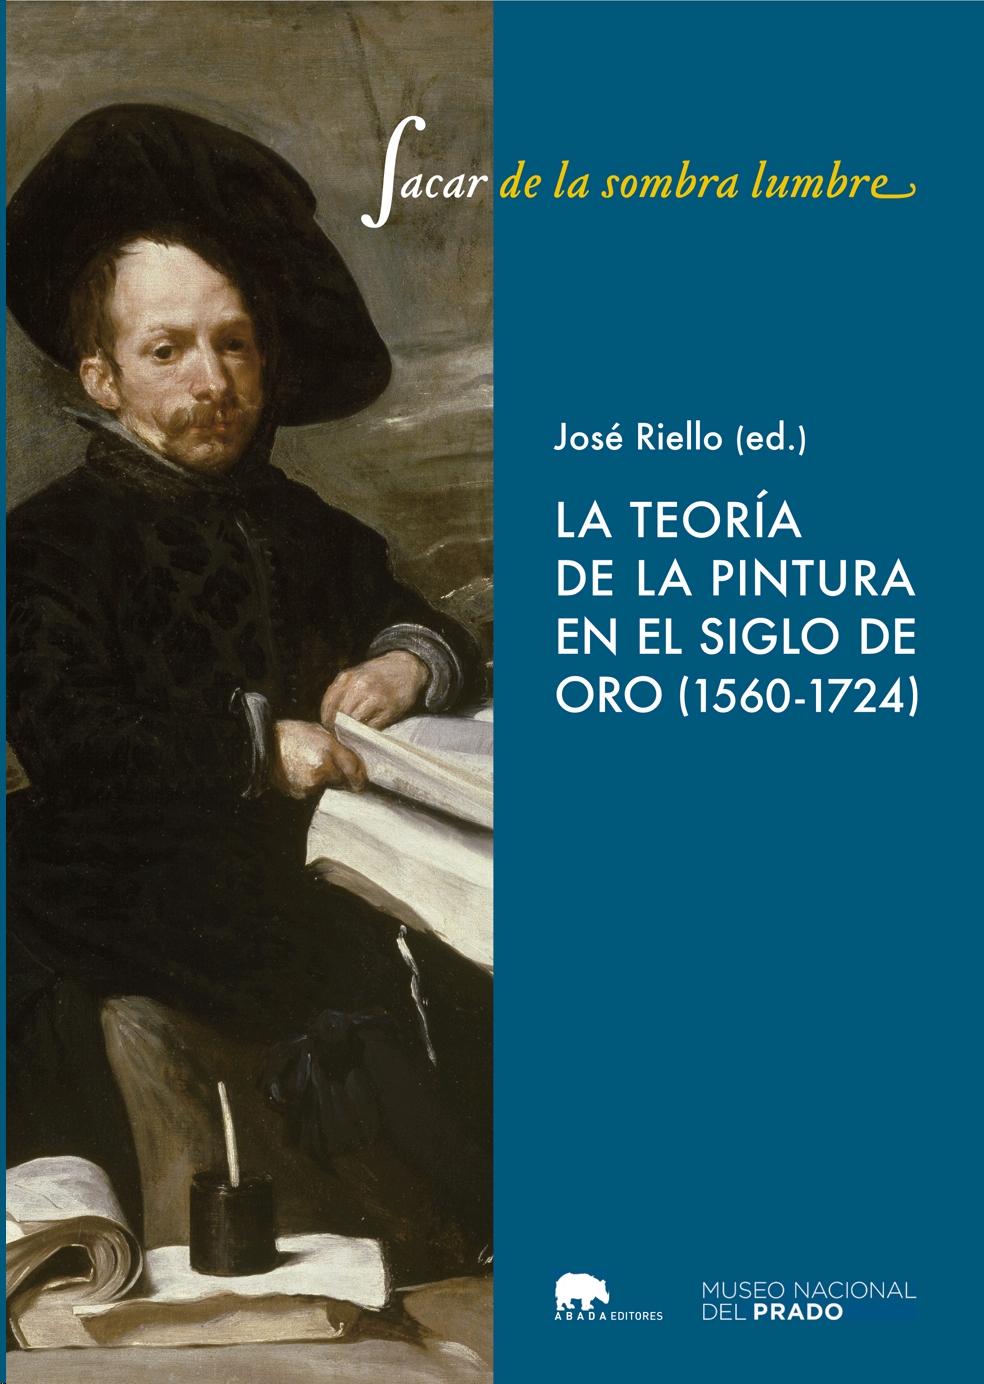 Sacar de la Sombra Lumbre "Teoría de la Pintura en el Siglo de Oro (1560-1724)". 